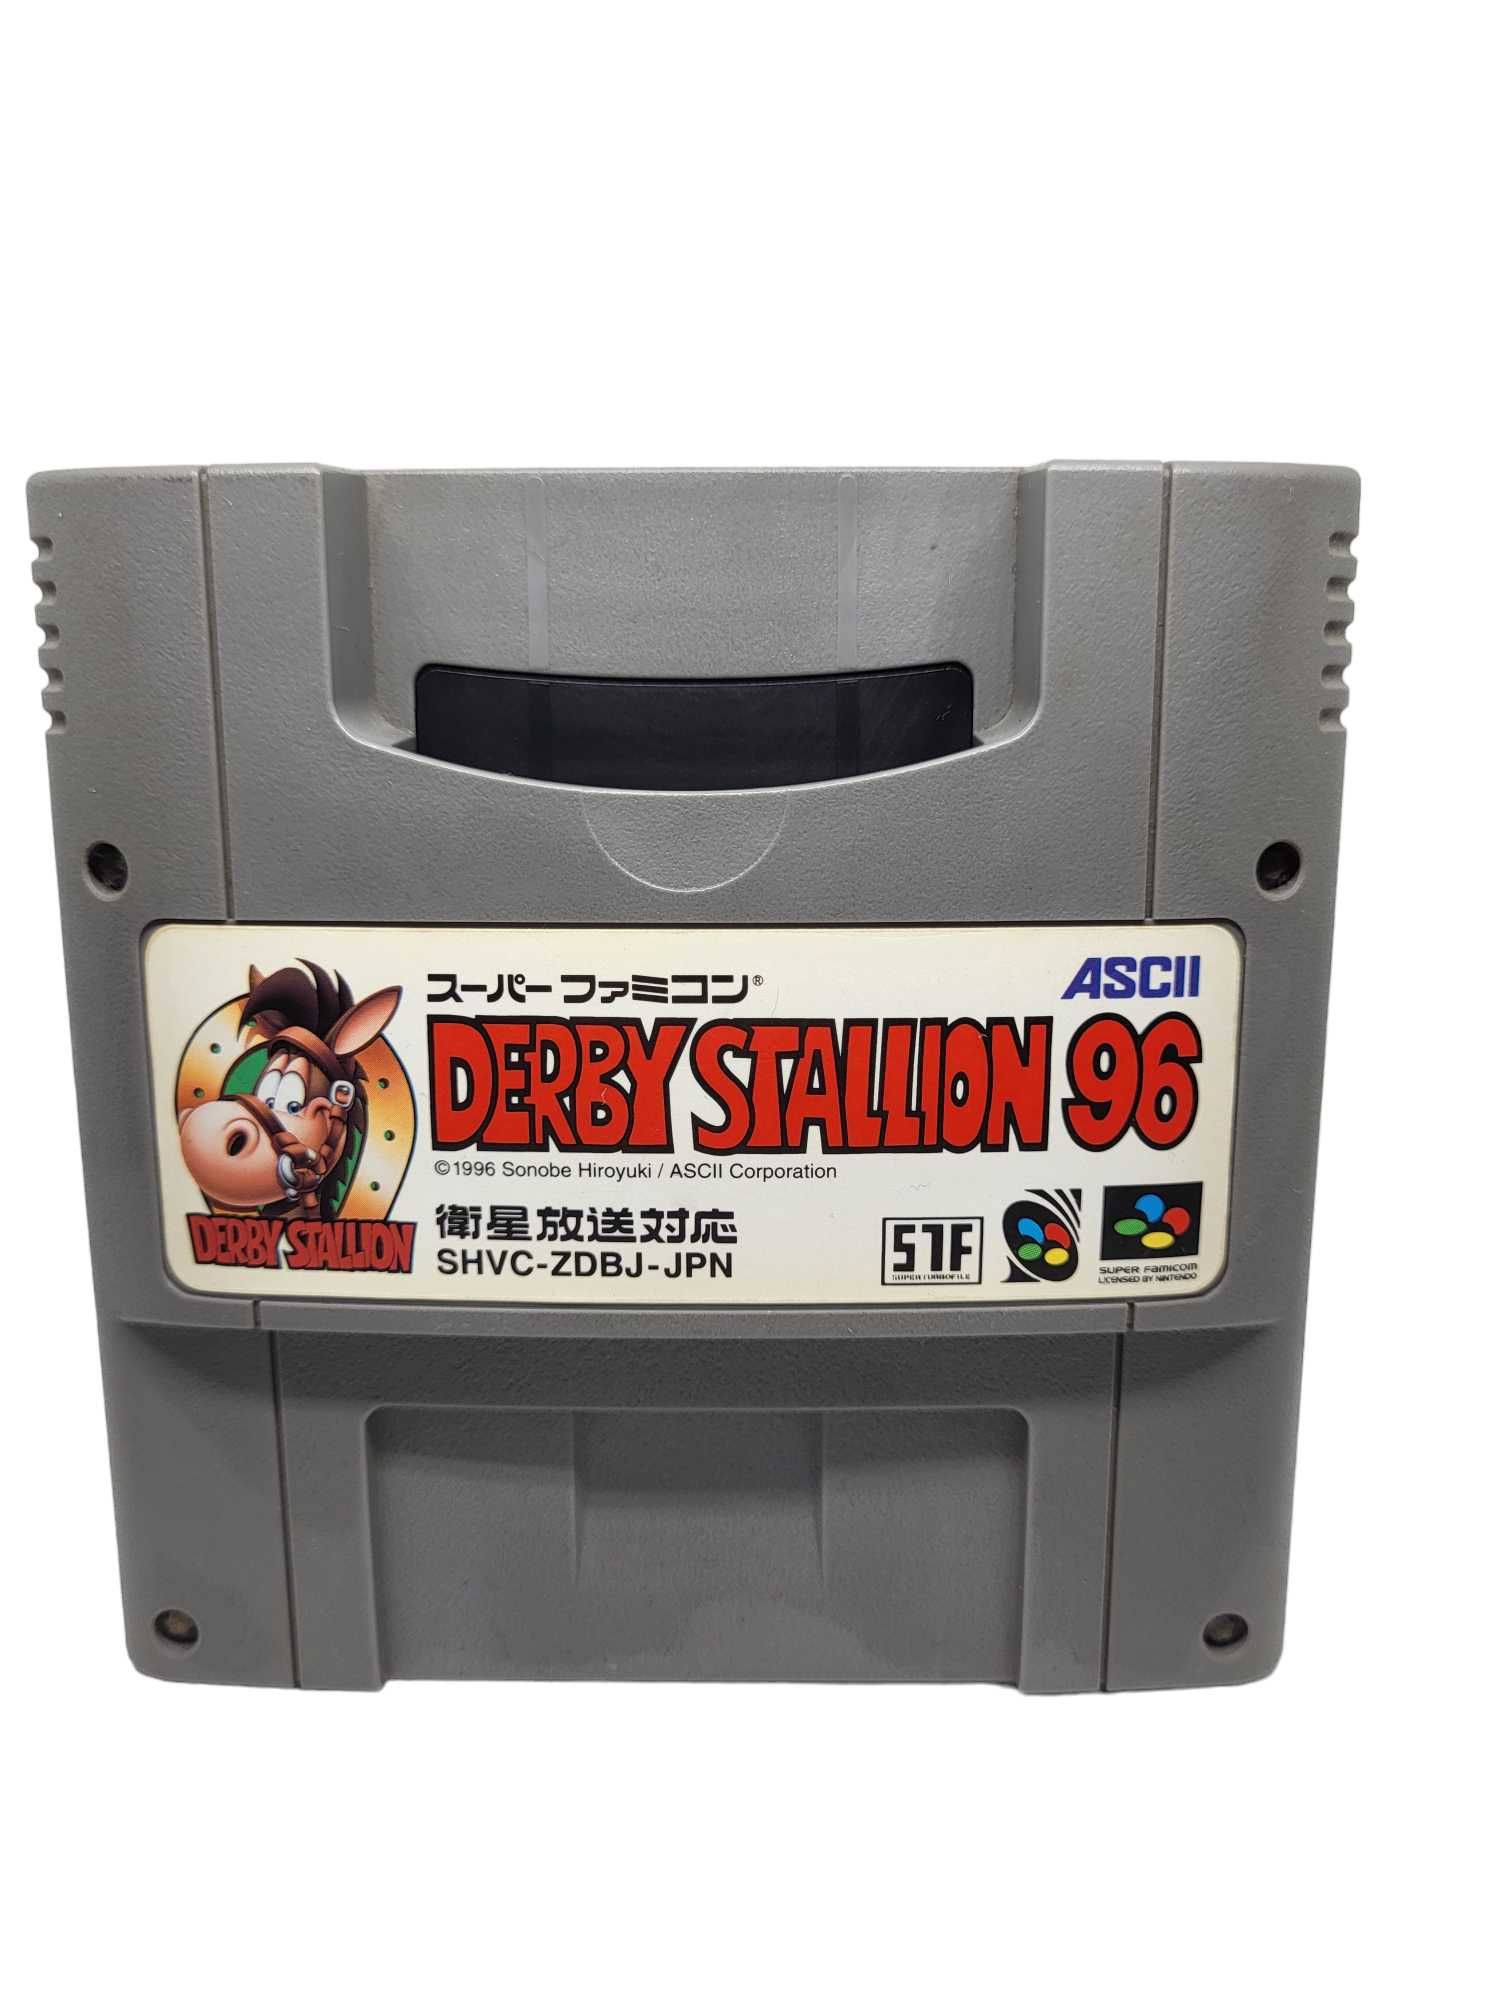 Derby Stallion 96 Super Famicom